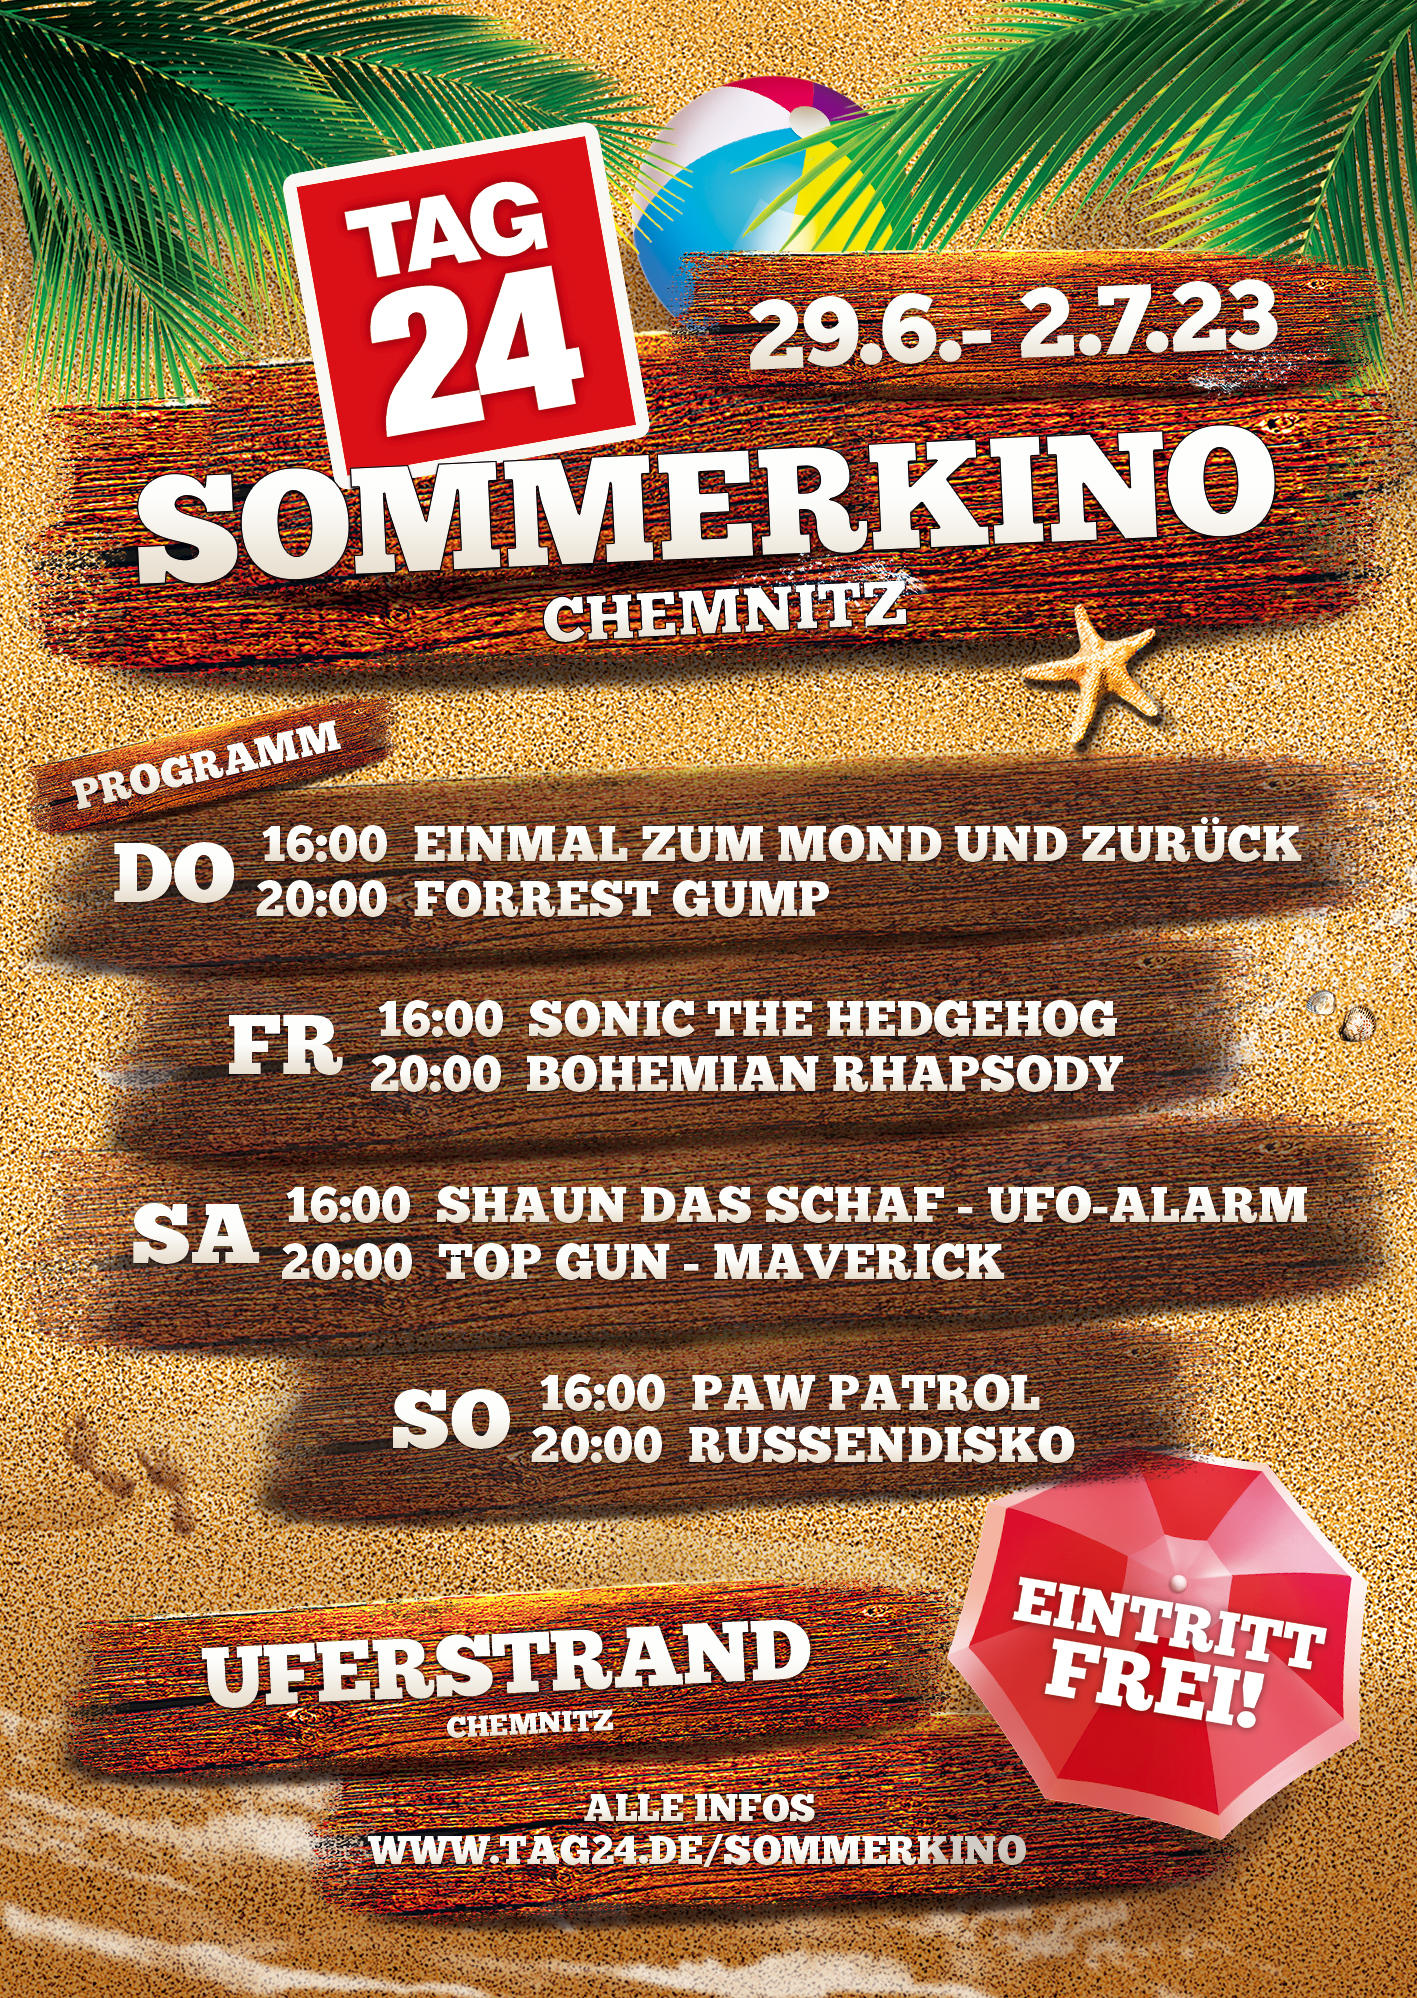 29.06. - 2.7.23 - Sommerkino Chemnitz